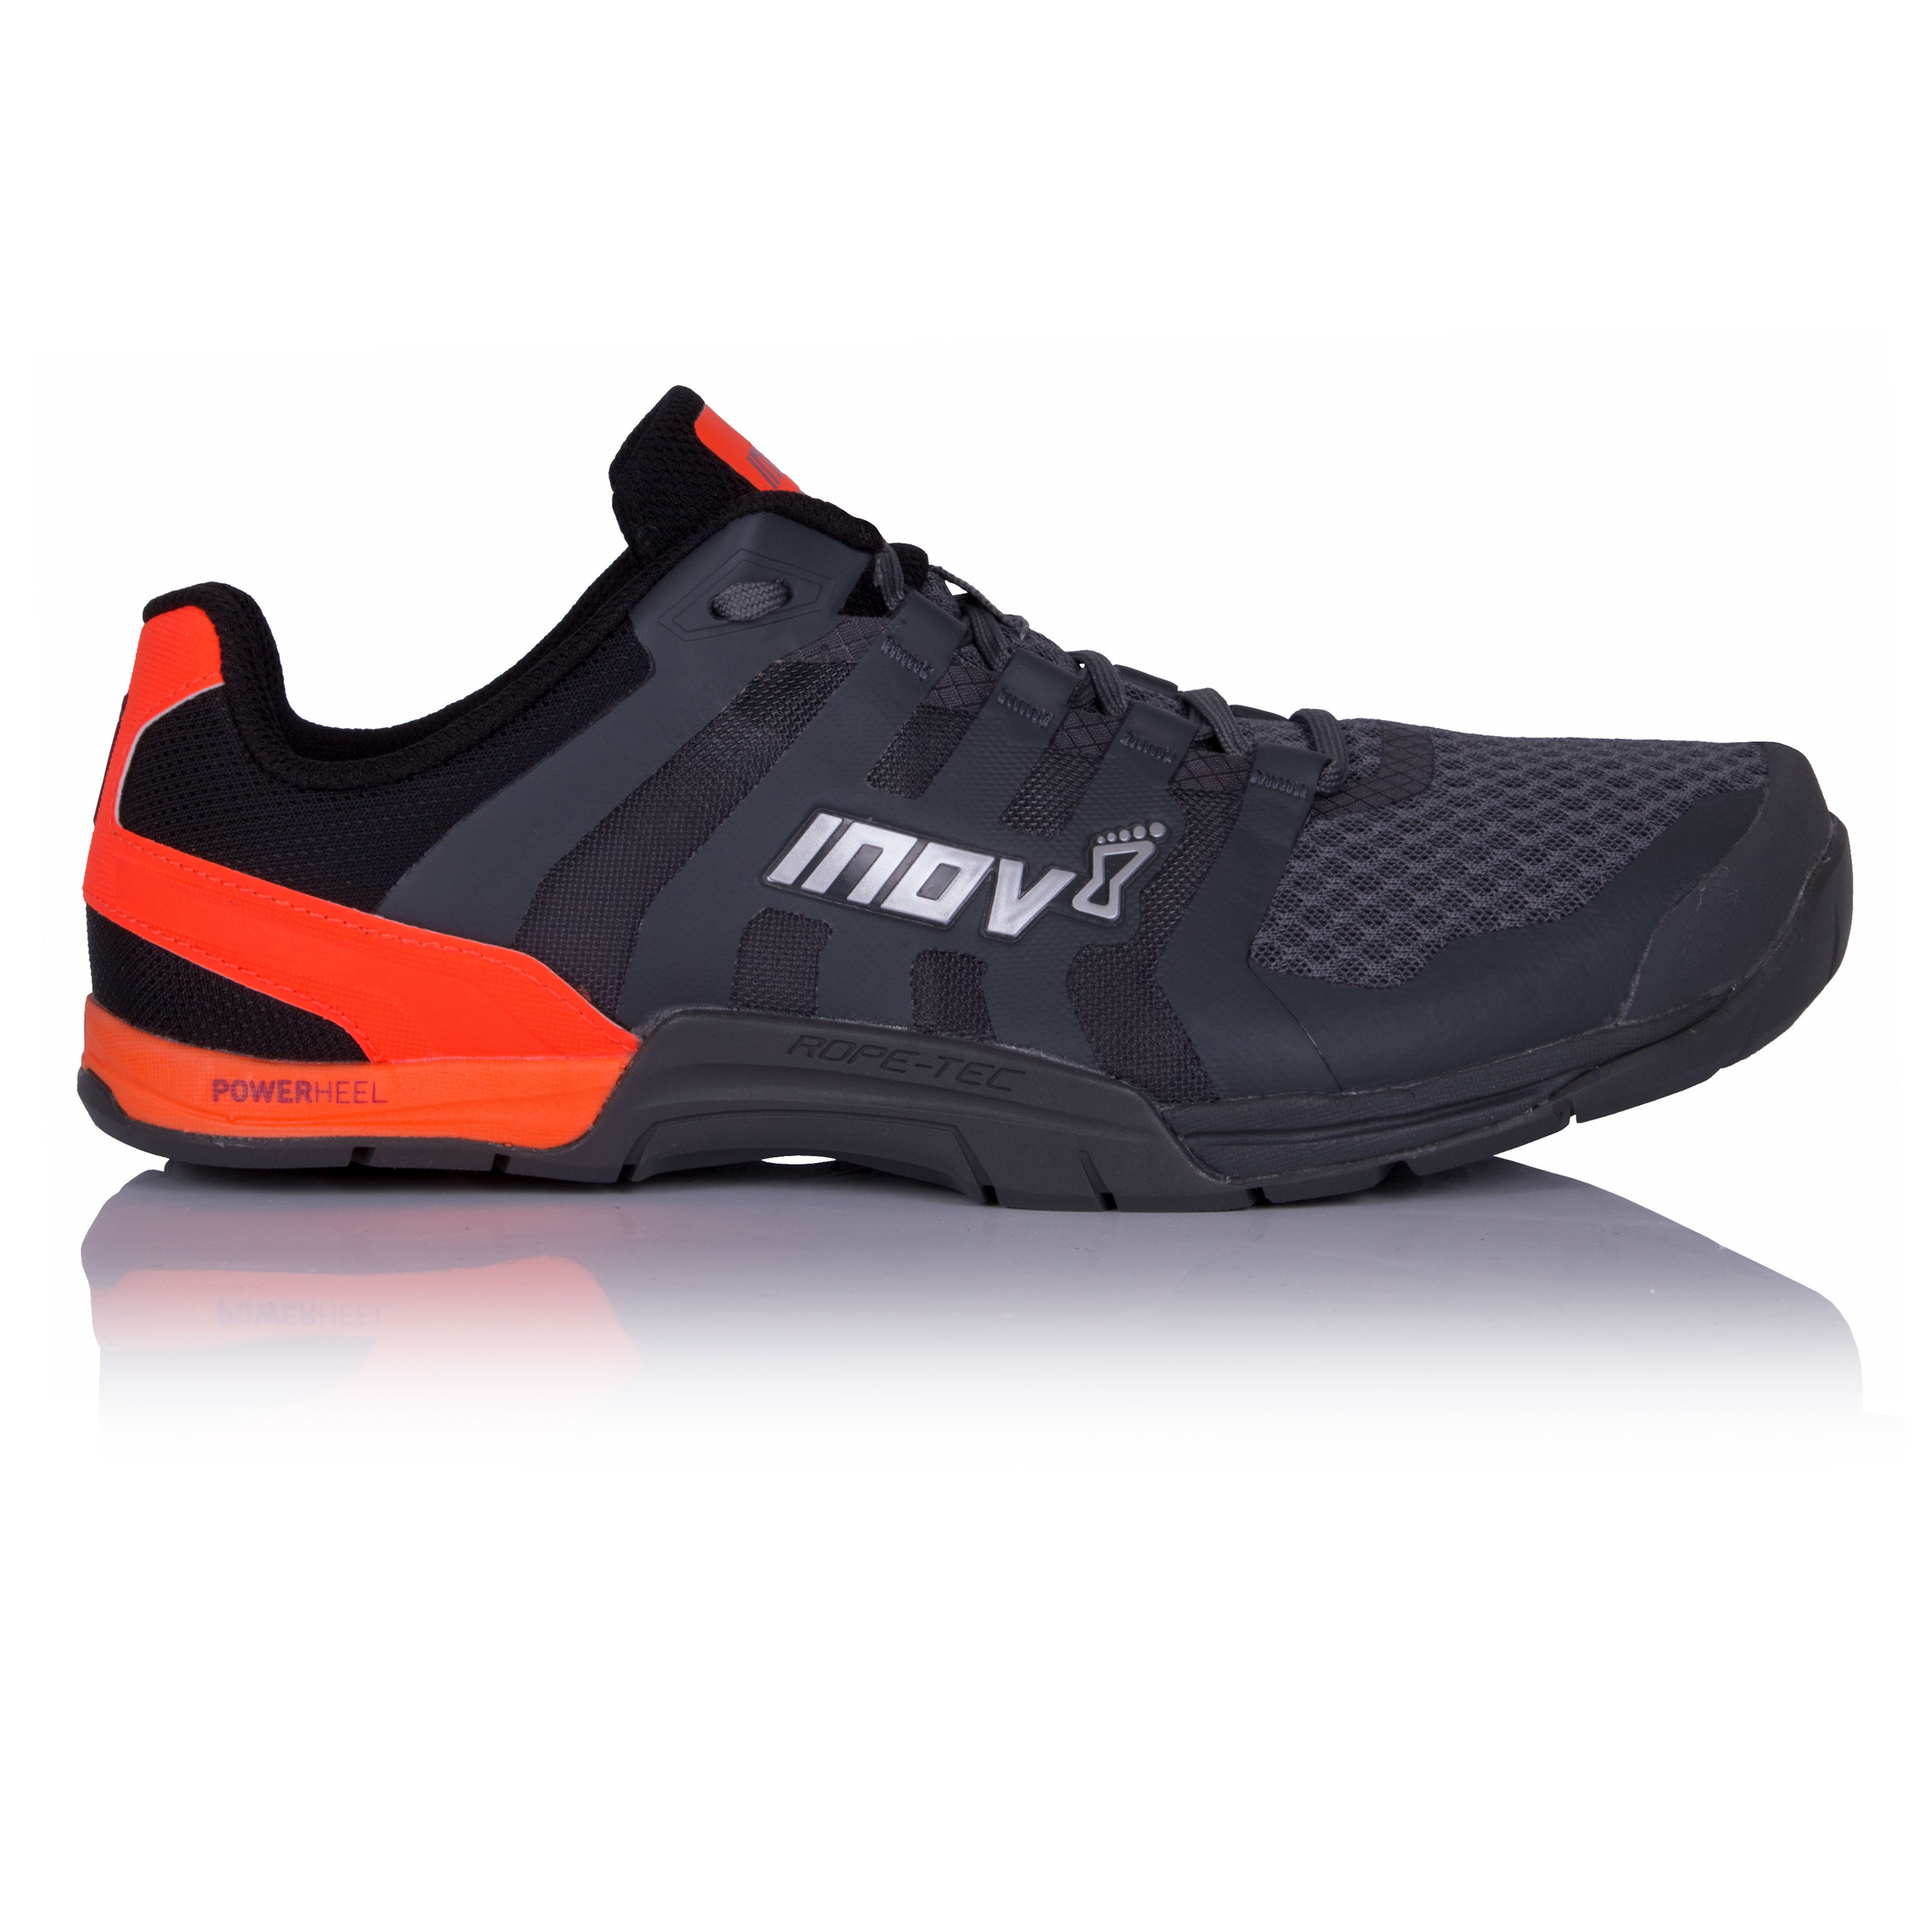 Inov8 F-Lite 235 V2 Training Shoes